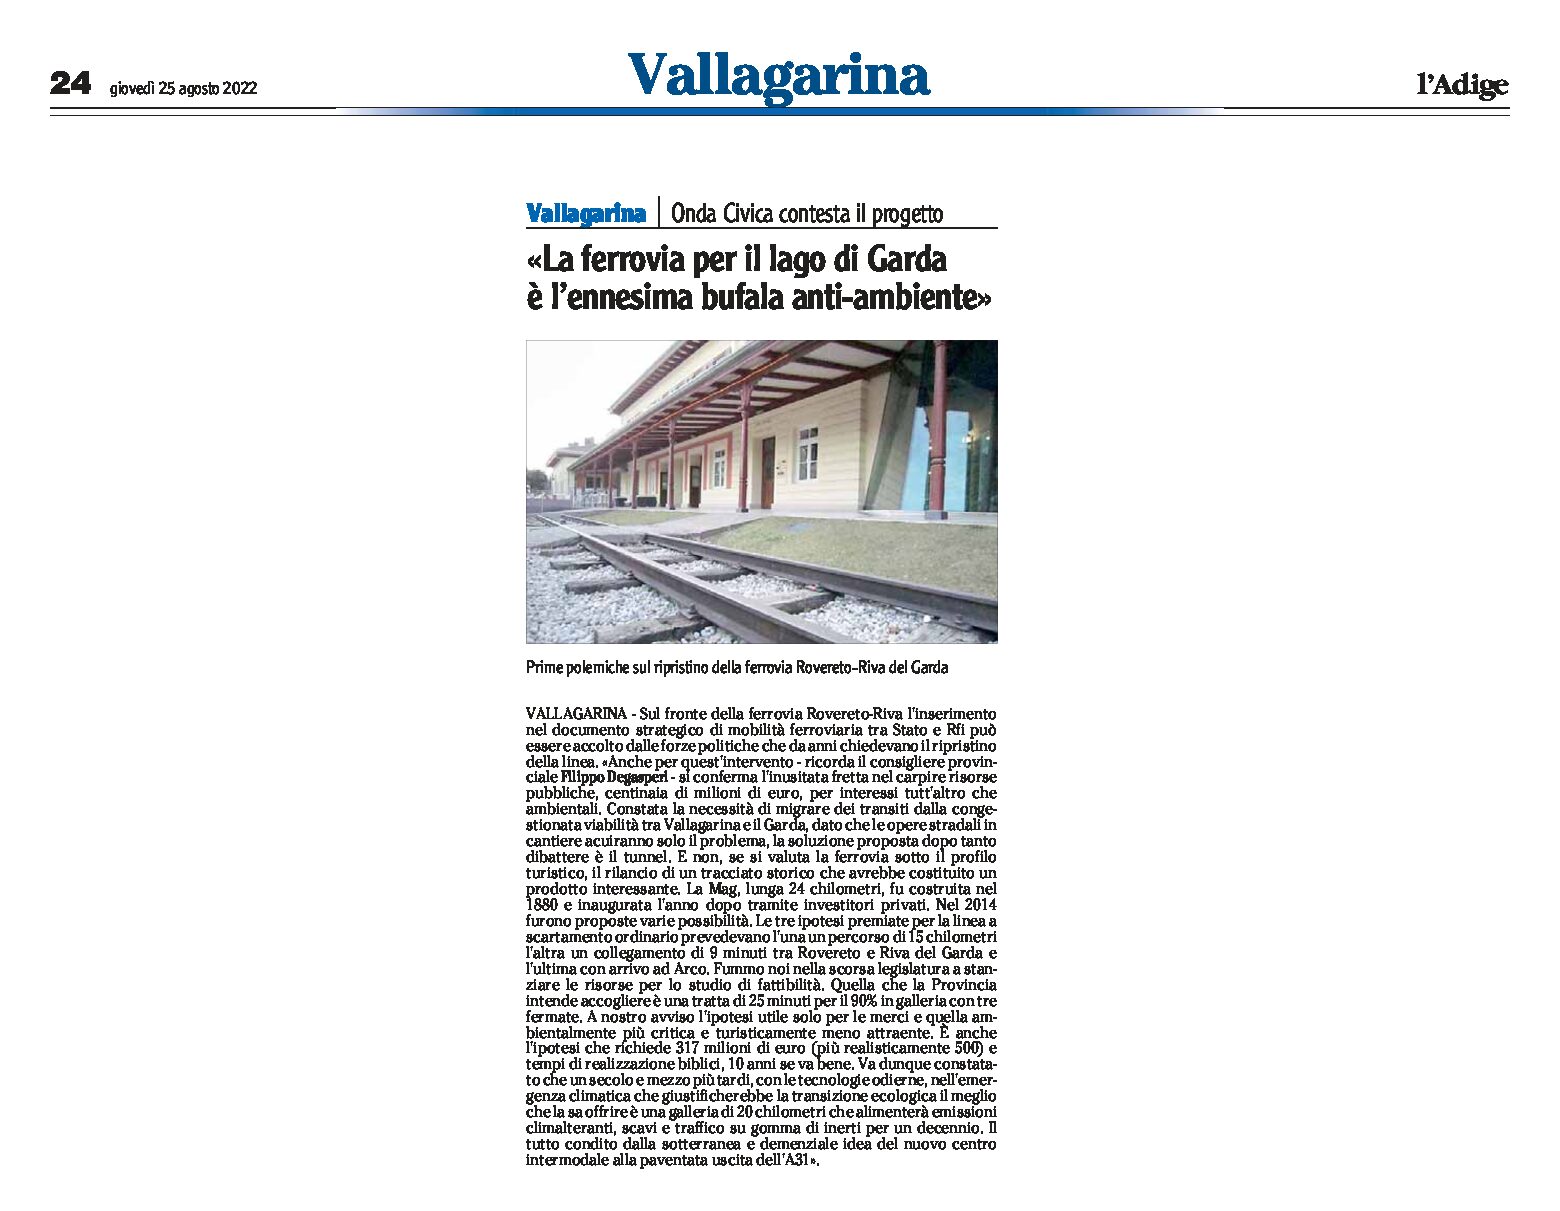 Ferrovia Rovereto-Riva: Onda Civica contesta il progetto “ennesima bufala anti-ambiente”